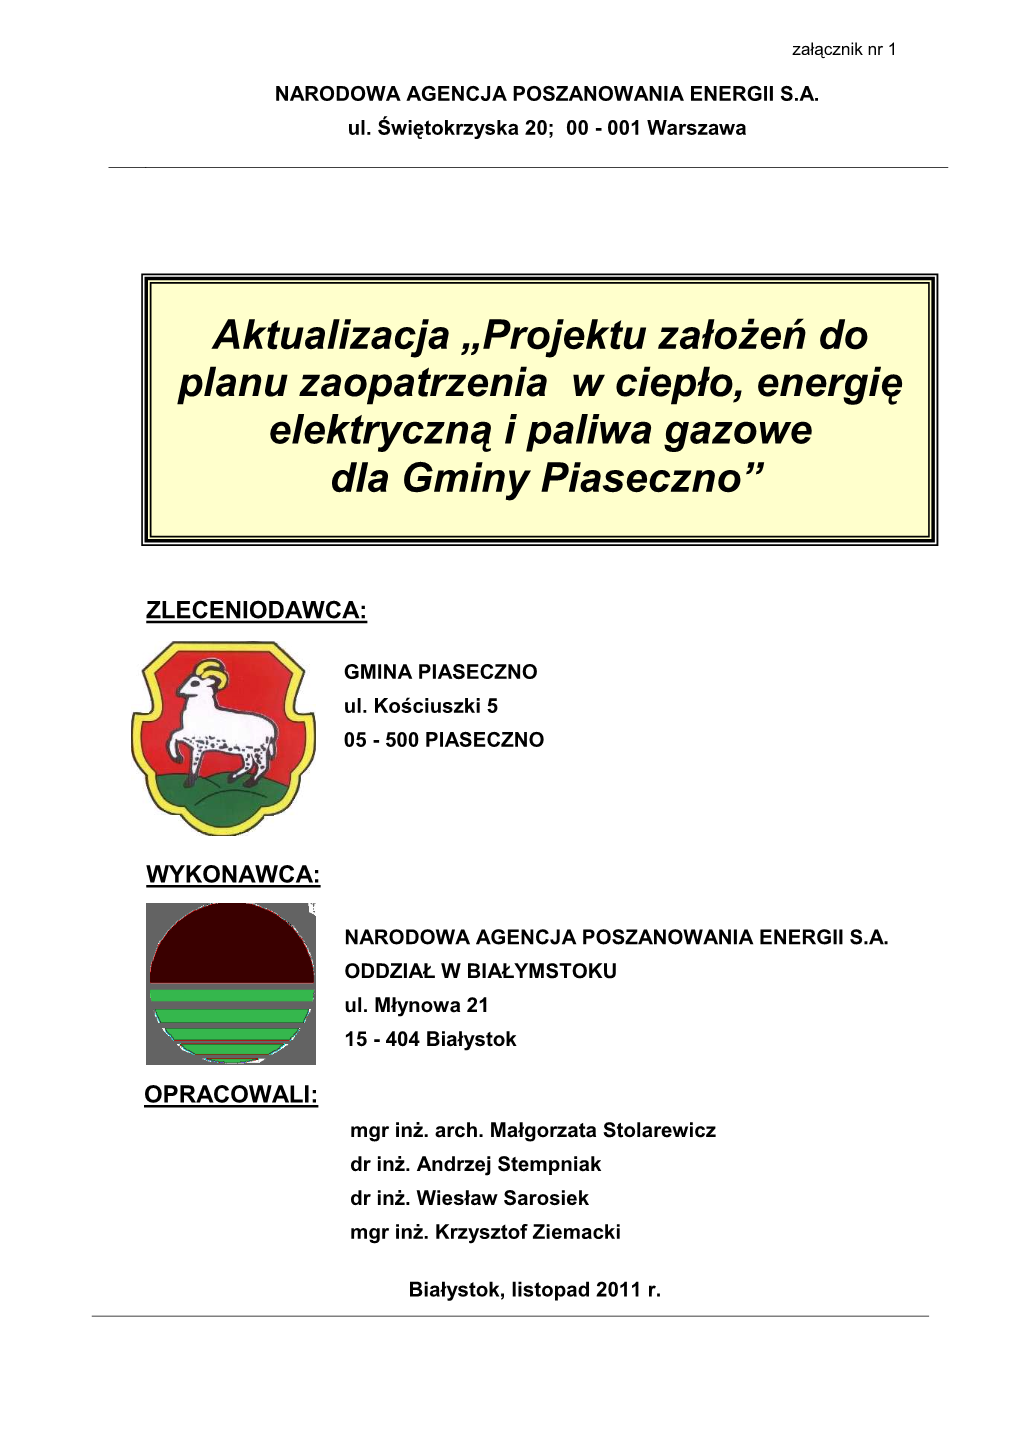 Projektu Załoŝeń Do Planu Zaopatrzenia W Ciepło, Energię Elektryczną I Paliwa Gazowe Dla Gminy Piaseczno”